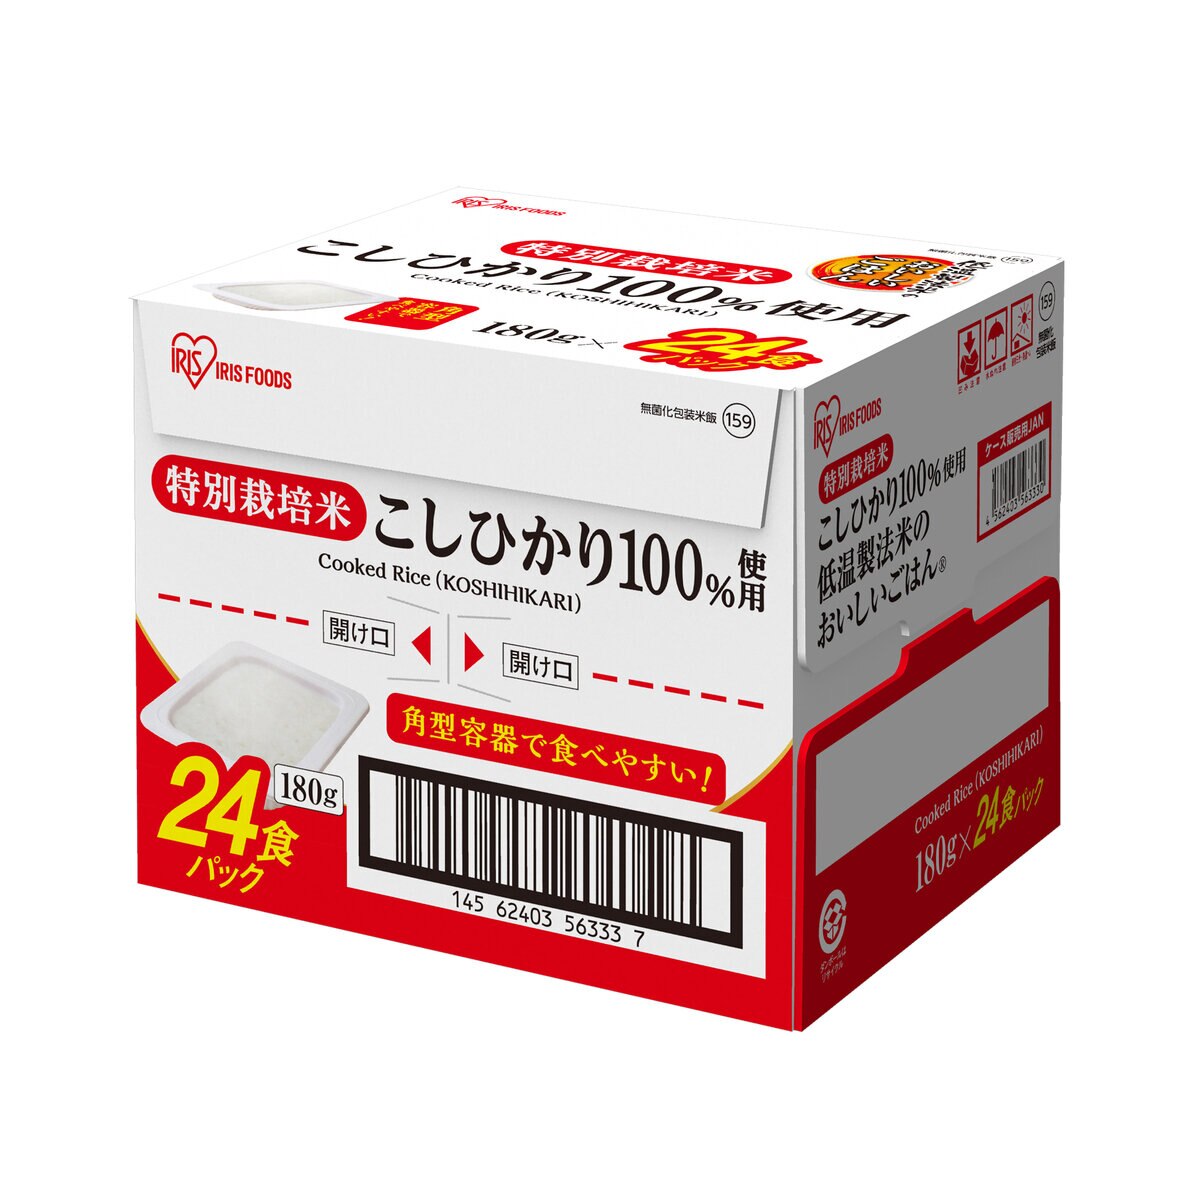 アイリスオーヤマ 低温製法米パックライス 180g x 24パック 特別栽培米こしひかり100% | Costco...